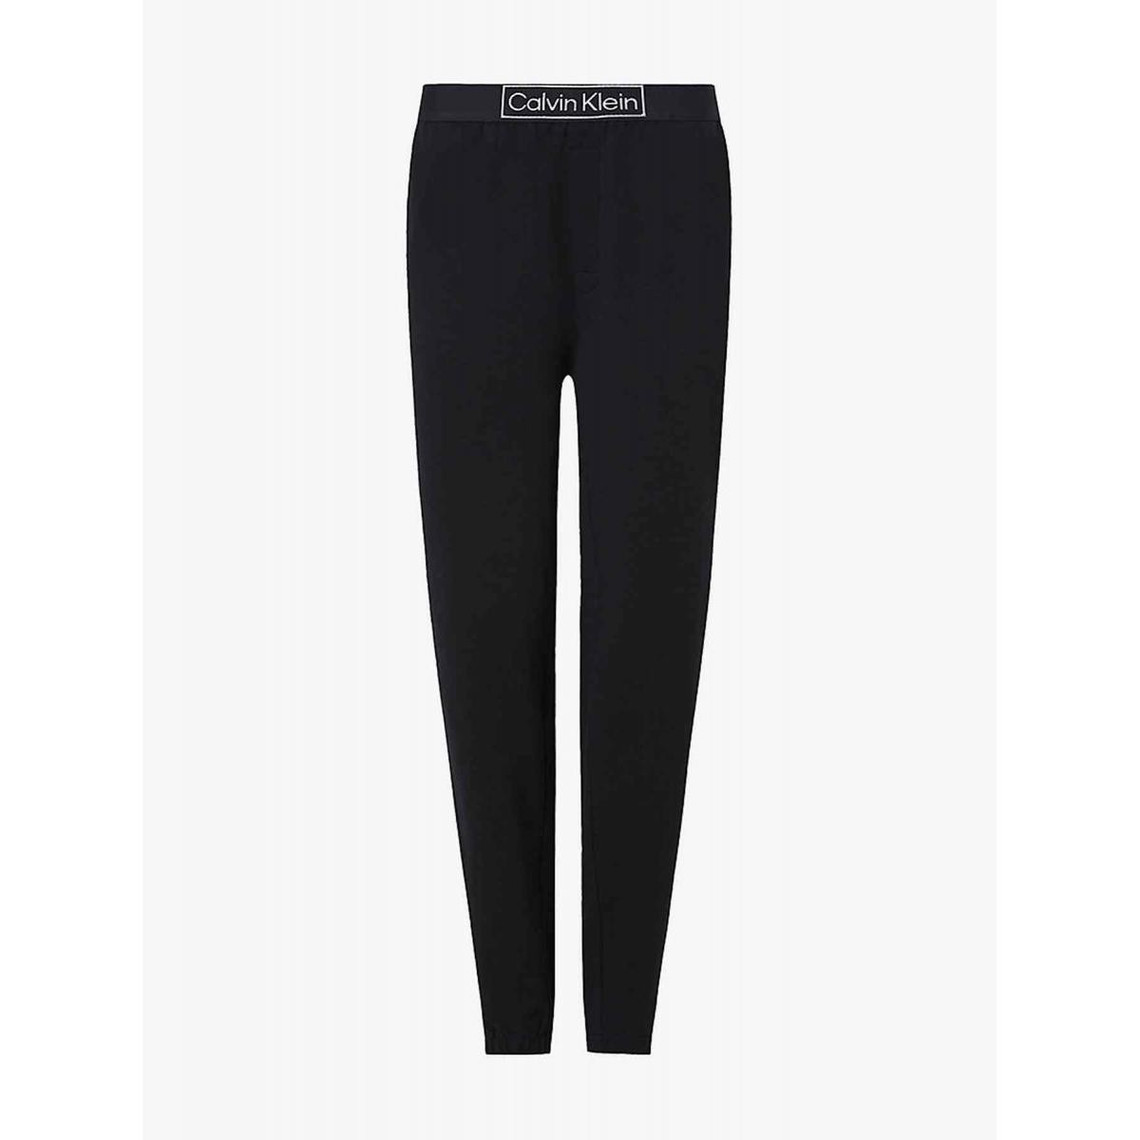 Pantalon jogging Femme - Noir en coton Calvin Klein Underwear - Lemon Curve